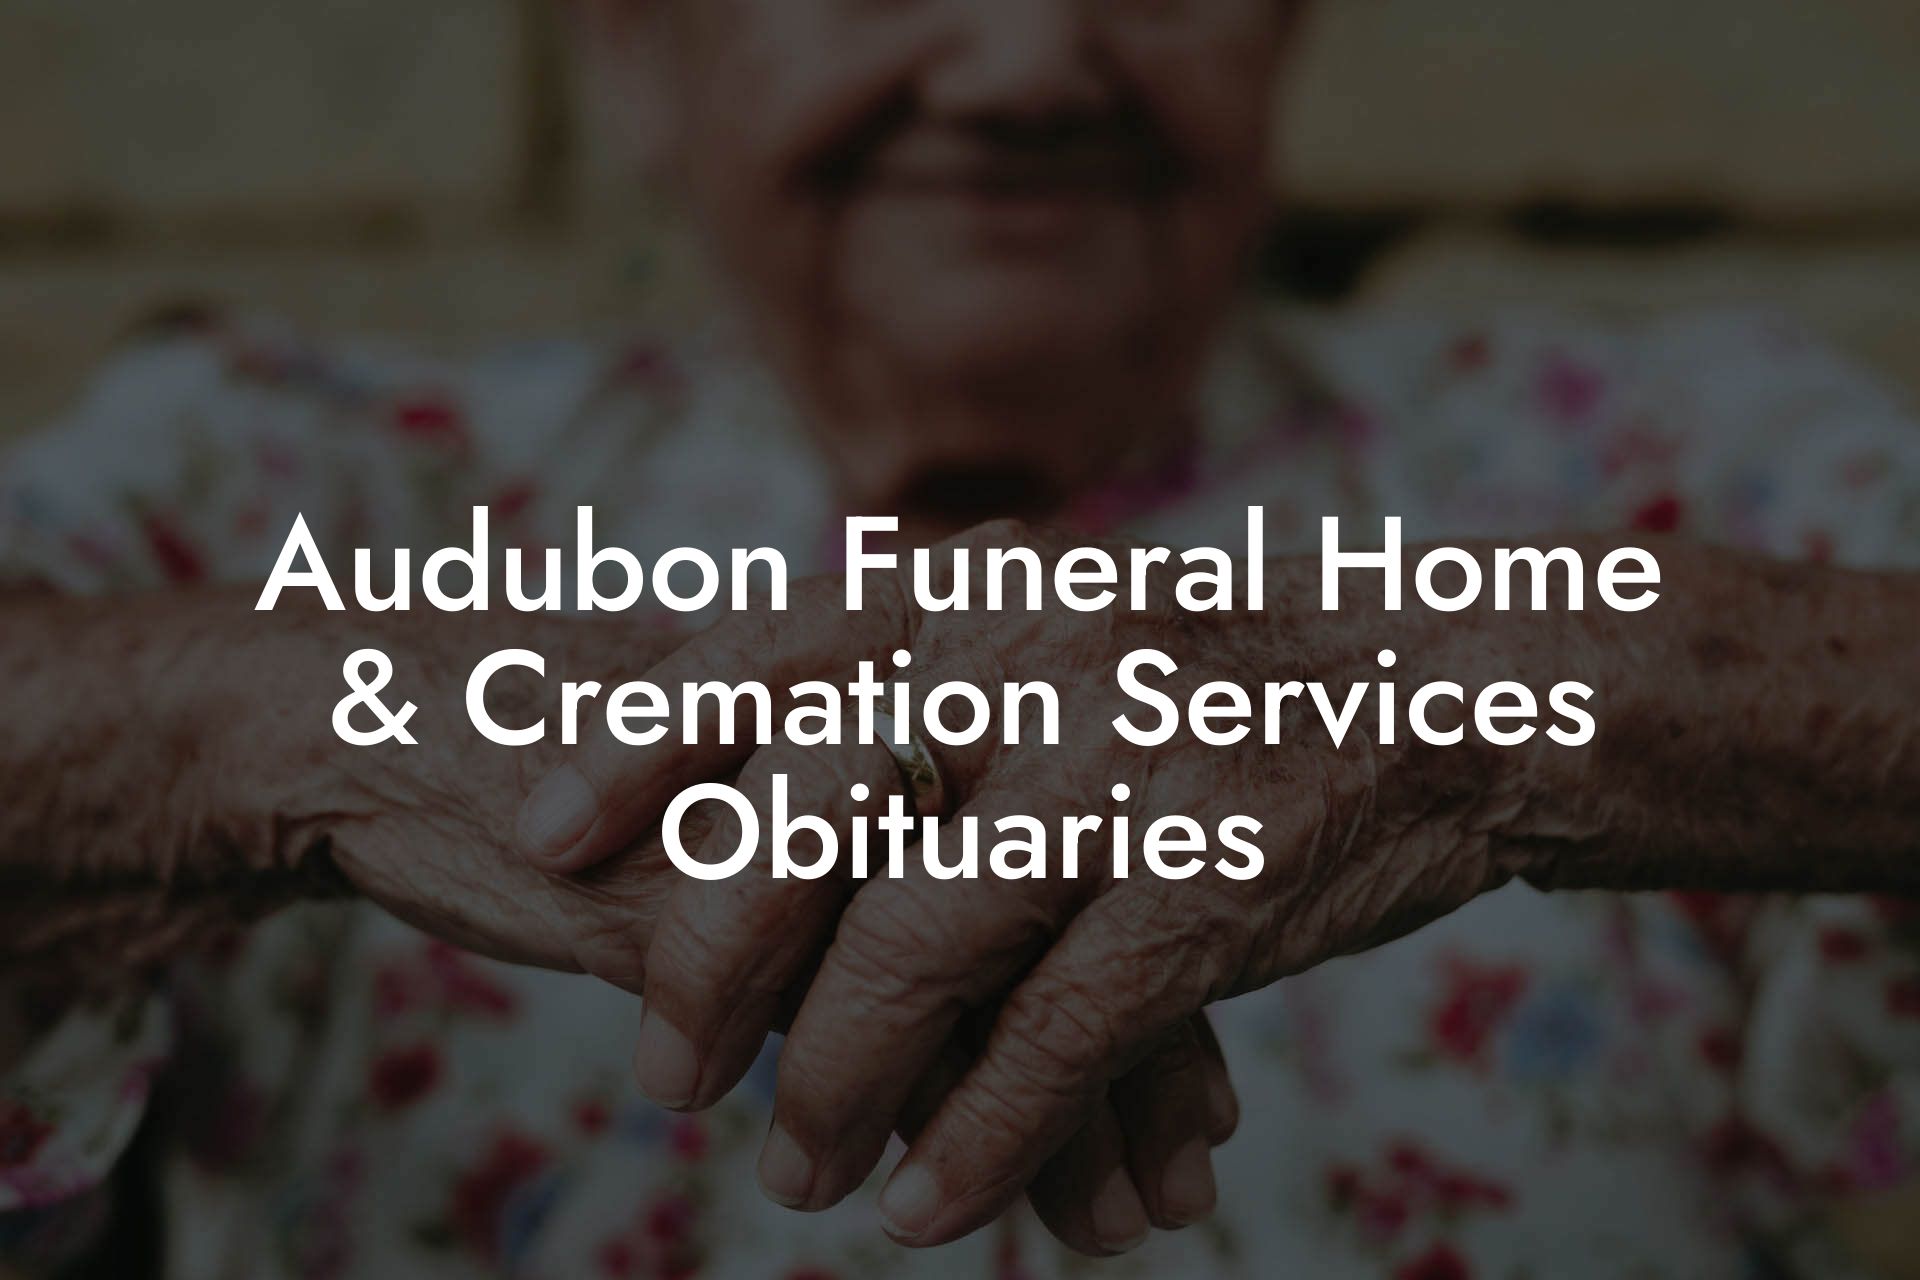 Audubon Funeral Home & Cremation Services Obituaries